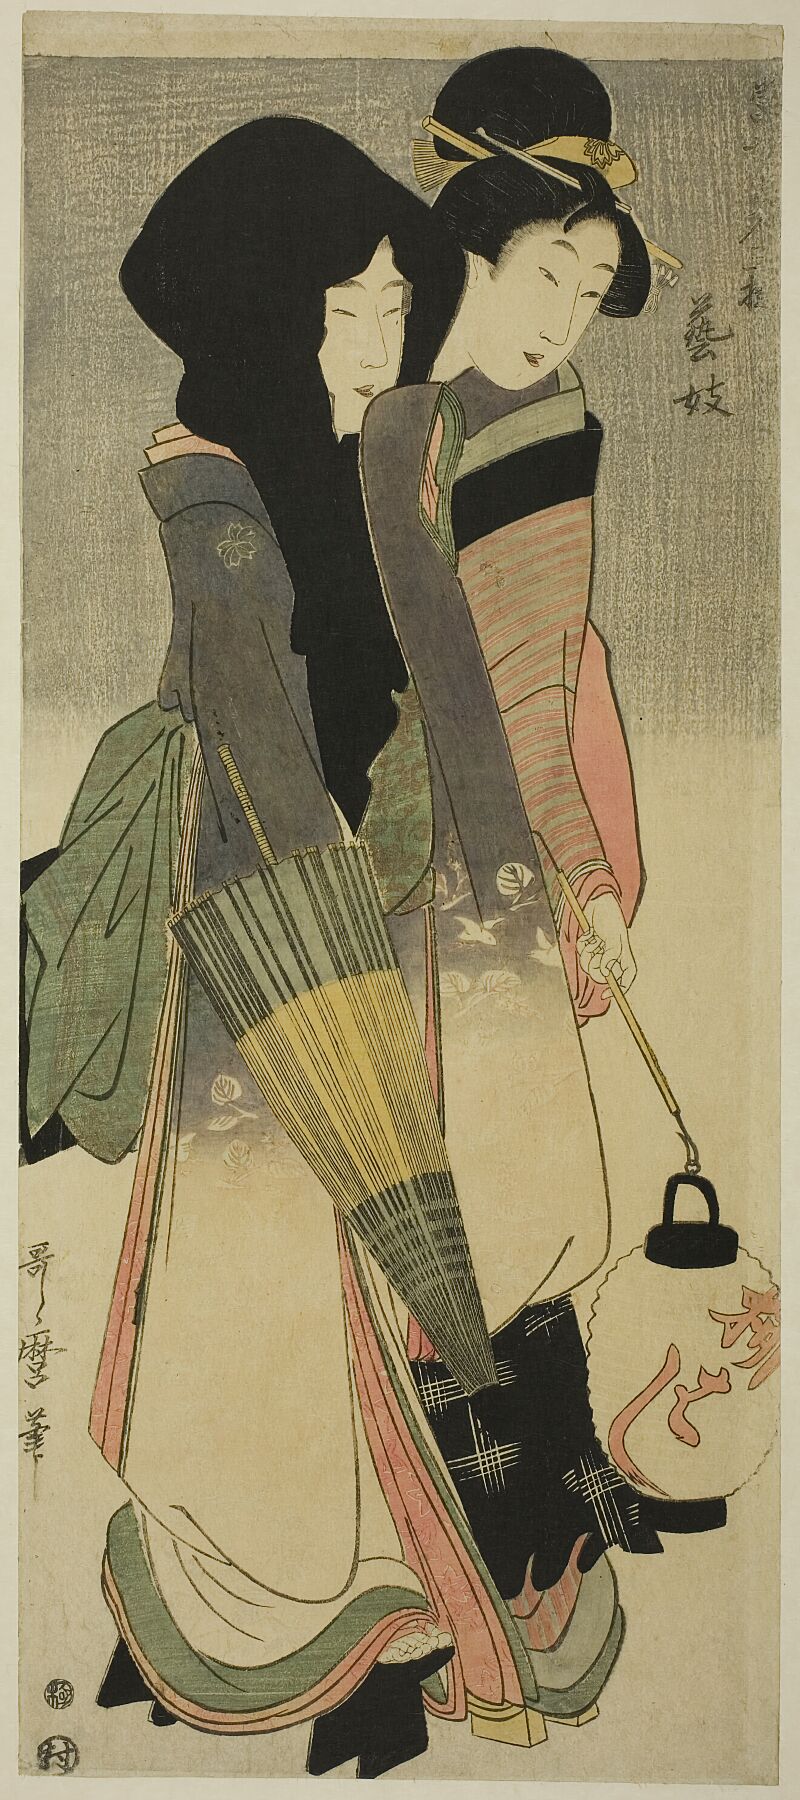 Geisha par Kitagawa Utamaro - ch. 1800 